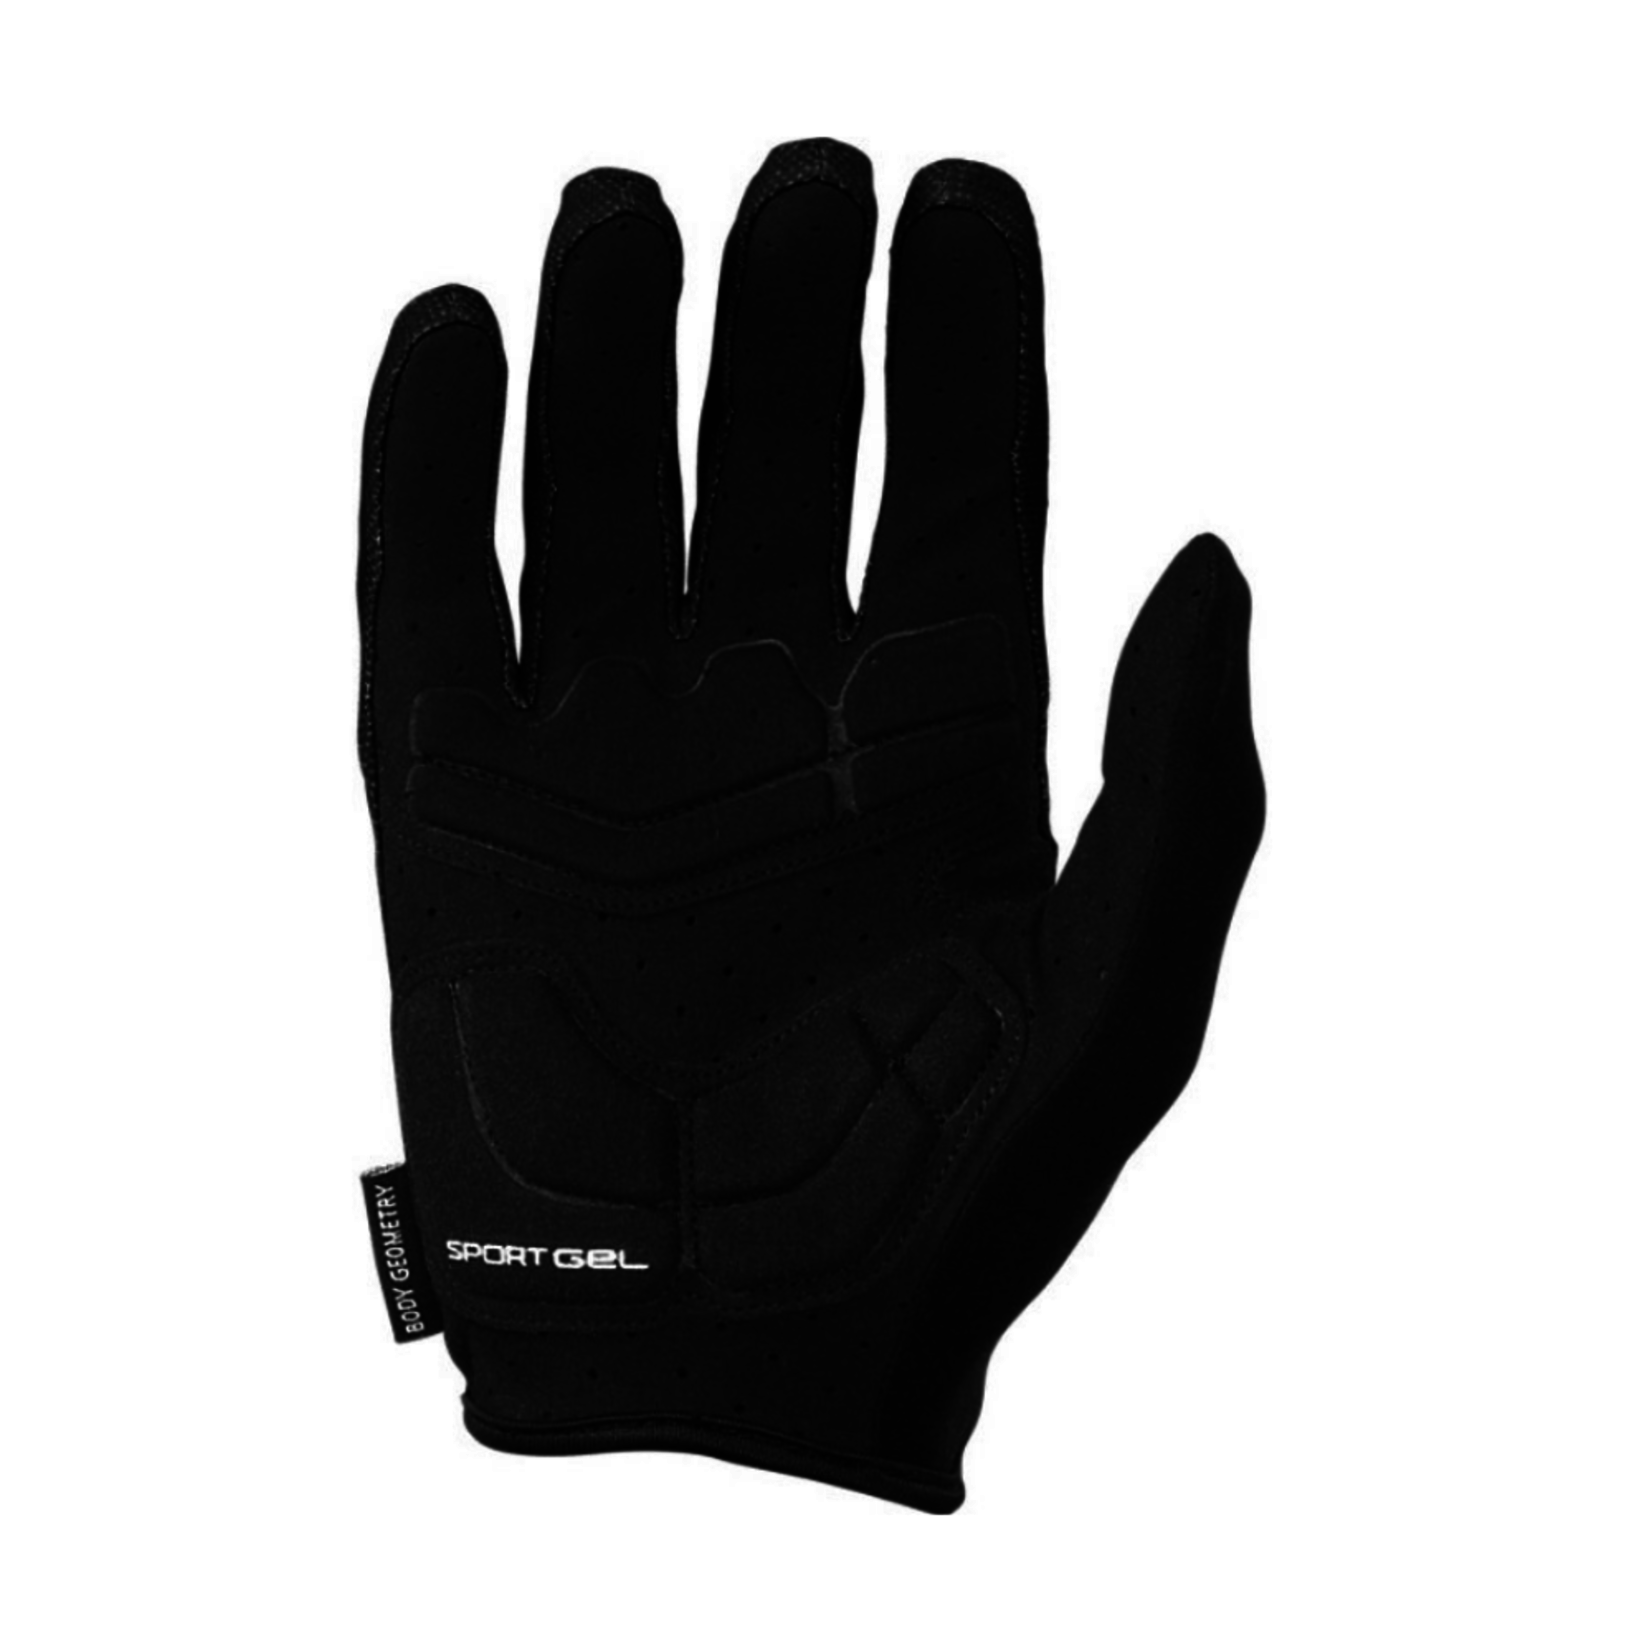 Specialized Specialized BG Sport Gel Long Finger Glove Women's